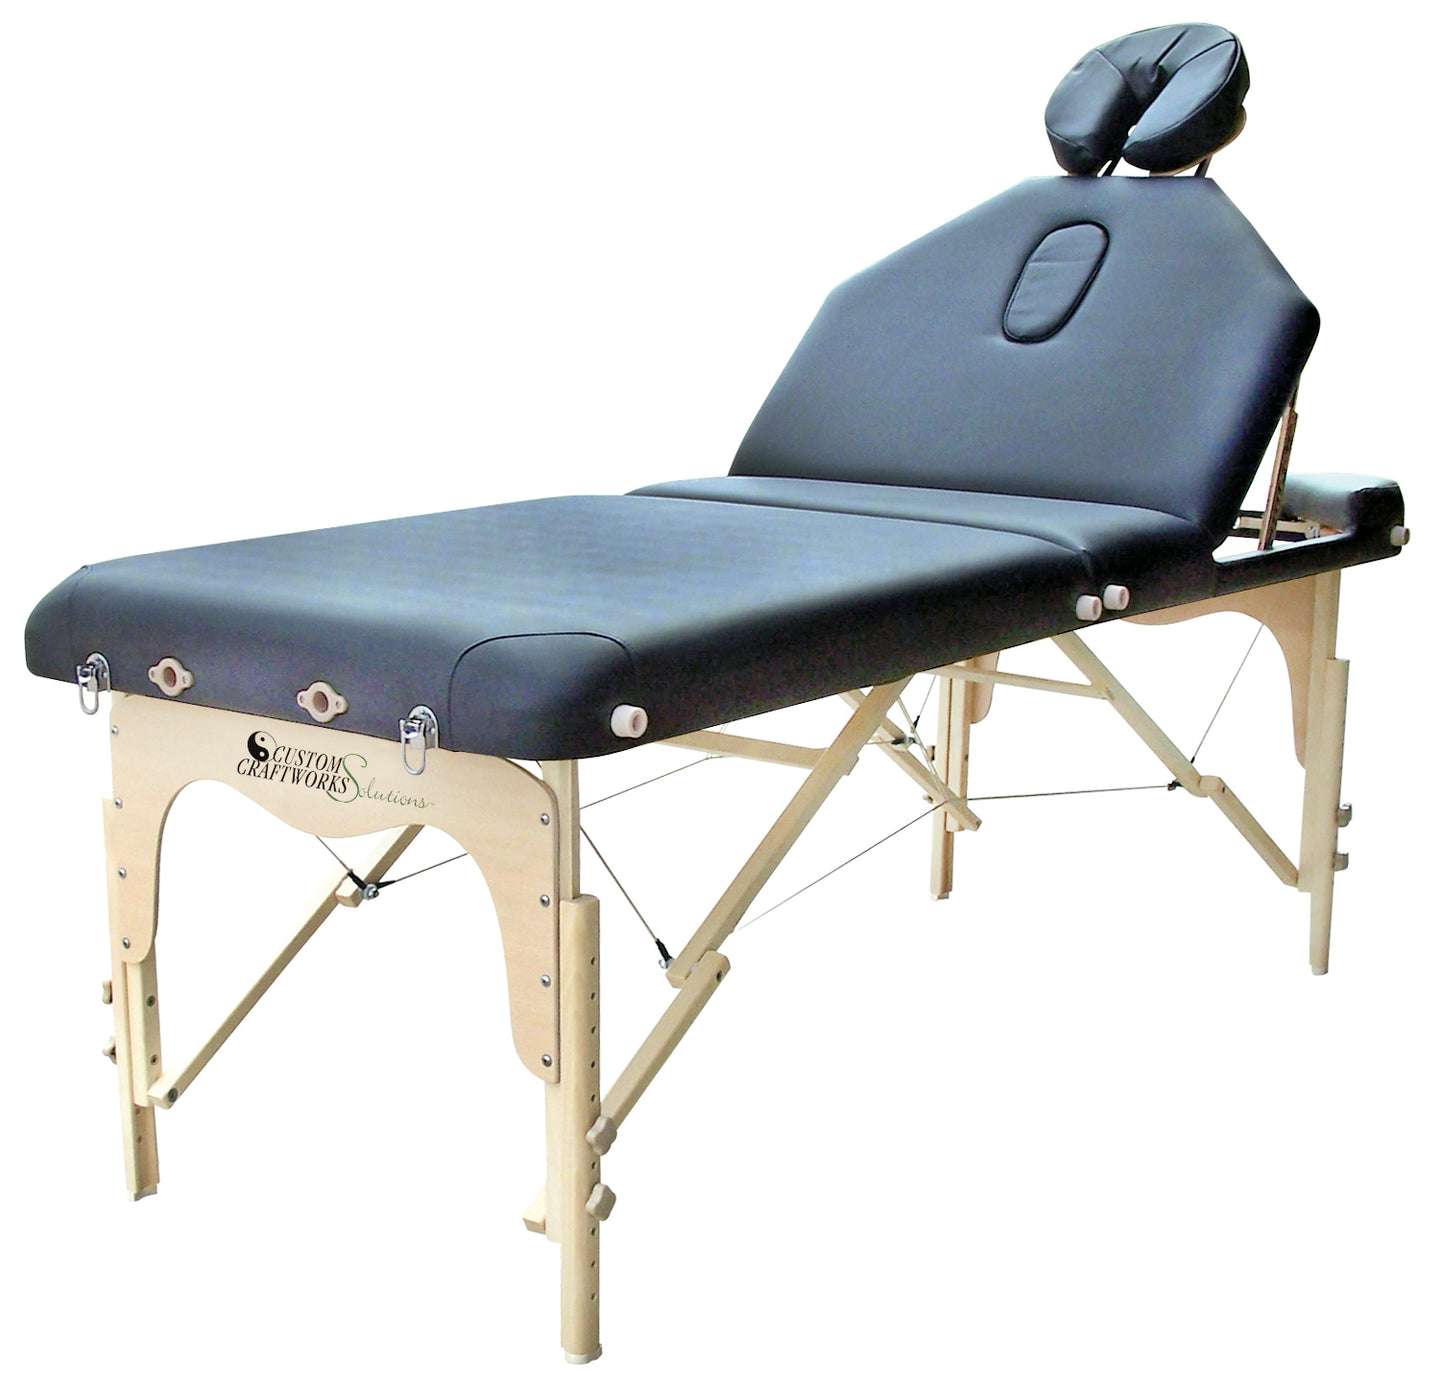 Superb Massage Tables